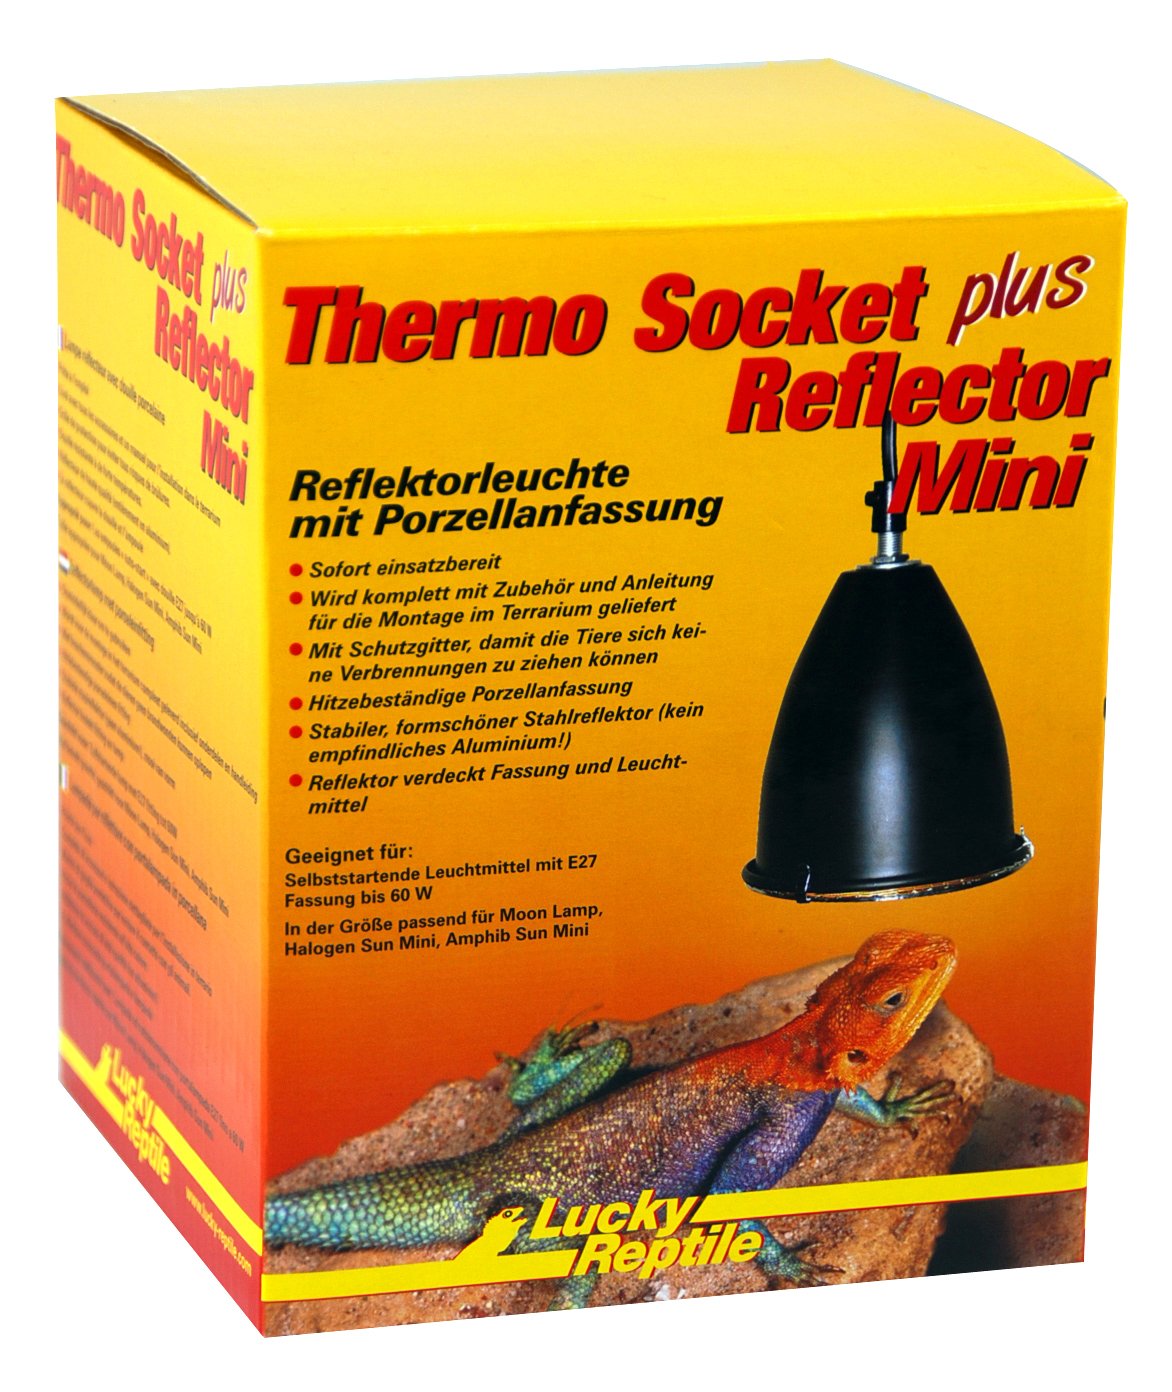 Import-Export Peter Hoch GmbH Reflektor Set klein für Thermo Socket